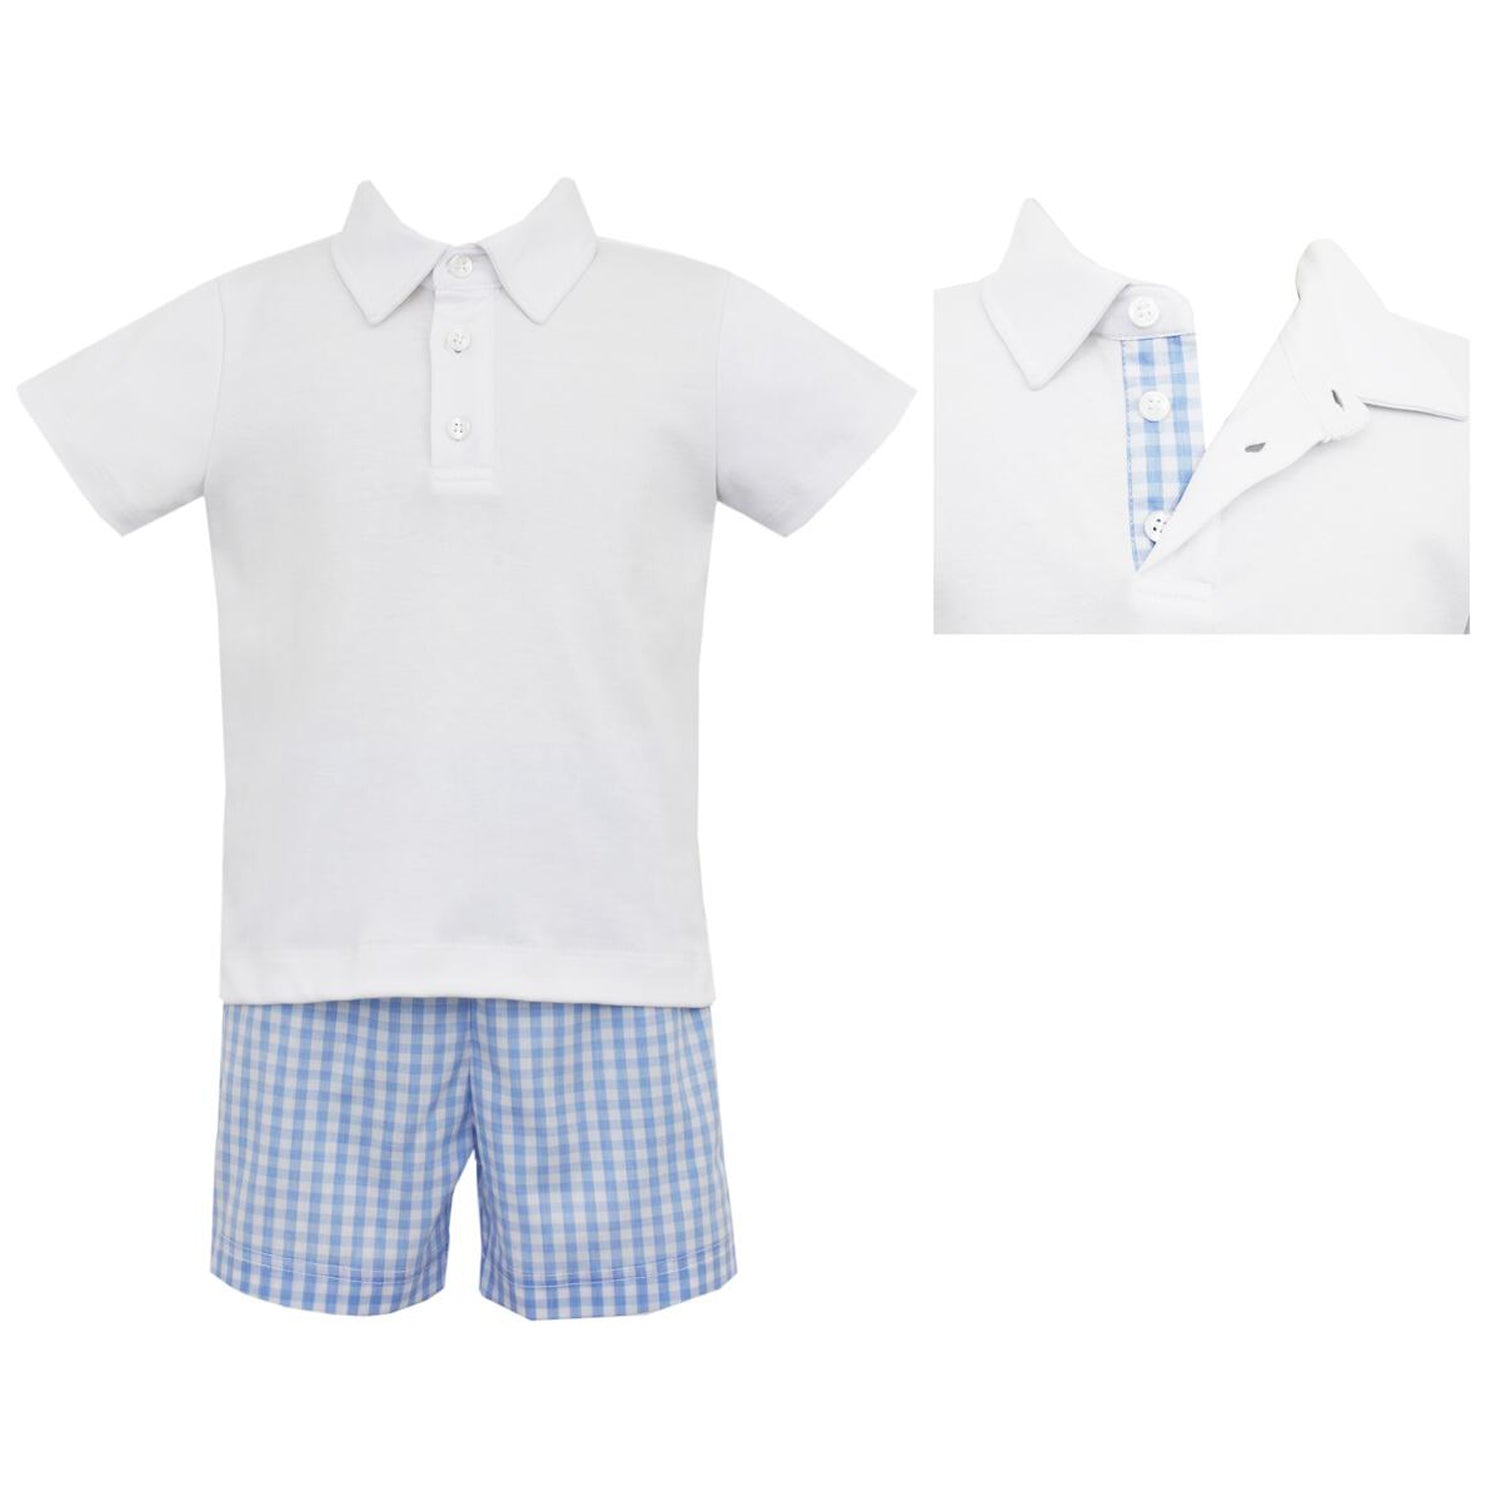 Blue Gingham Boy's Short Set w/ White Knit Polo